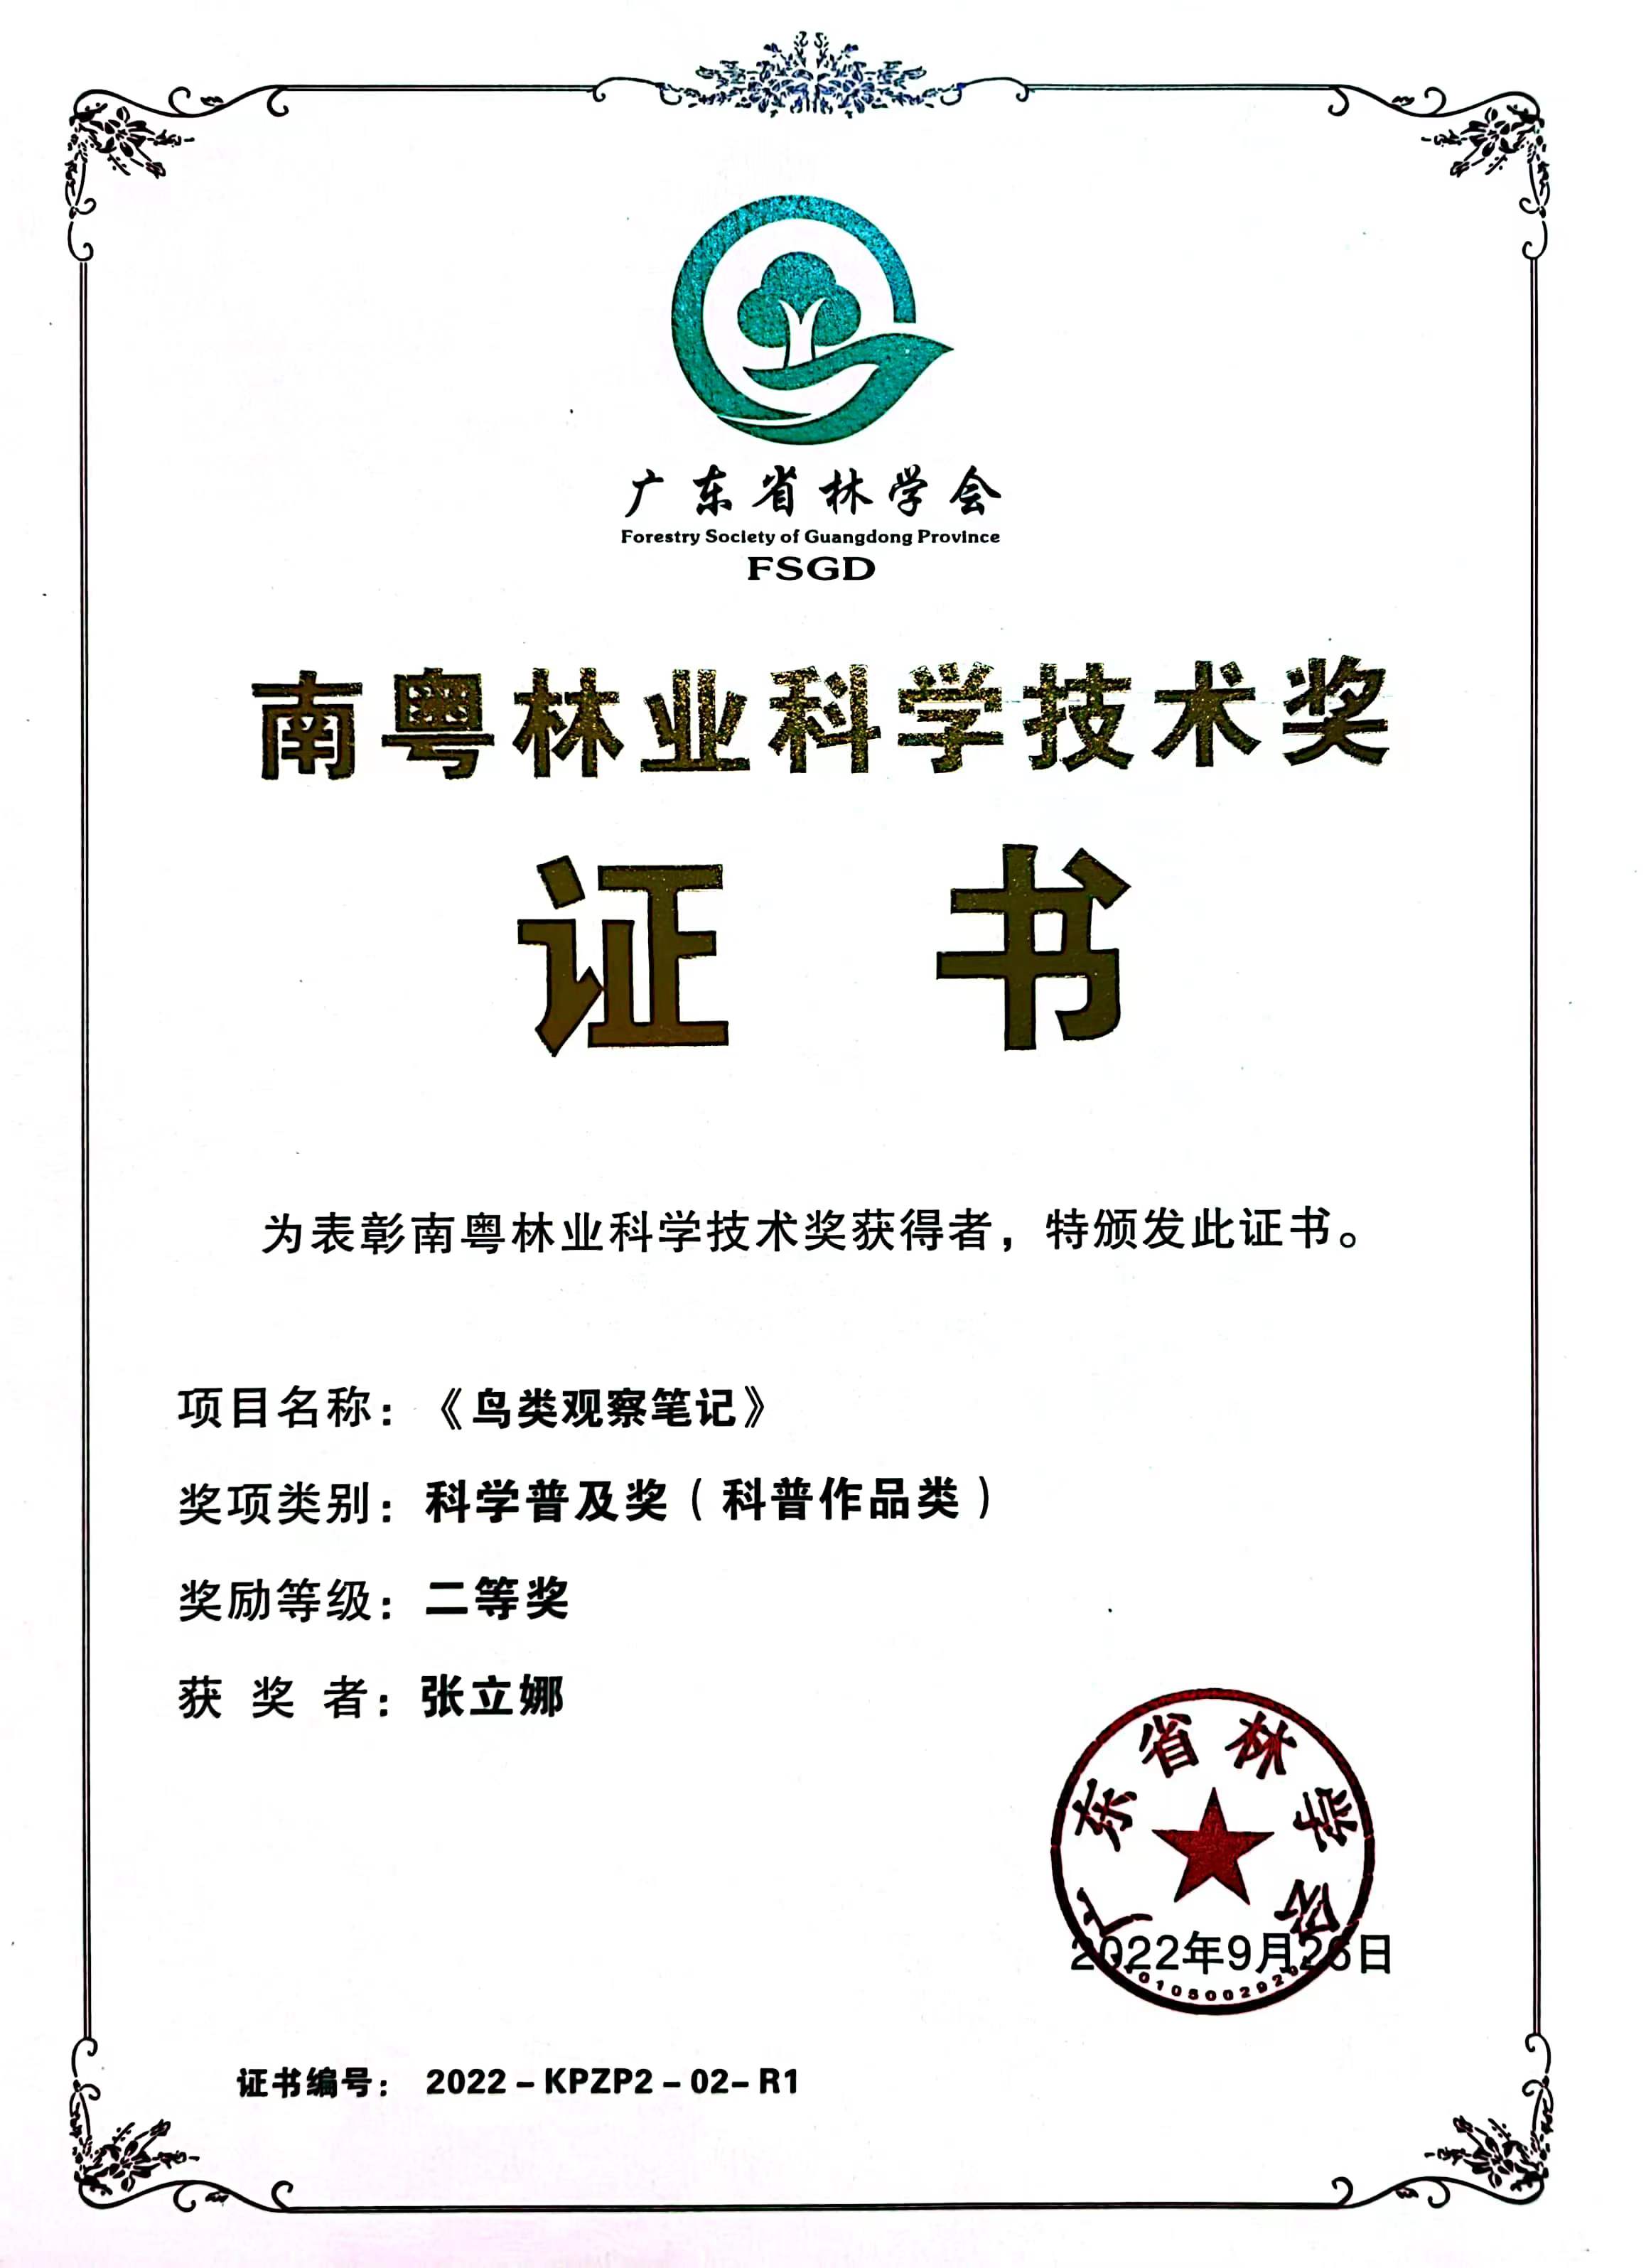 《鸟类观察笔记》获南粤林业科学技术奖.jpg